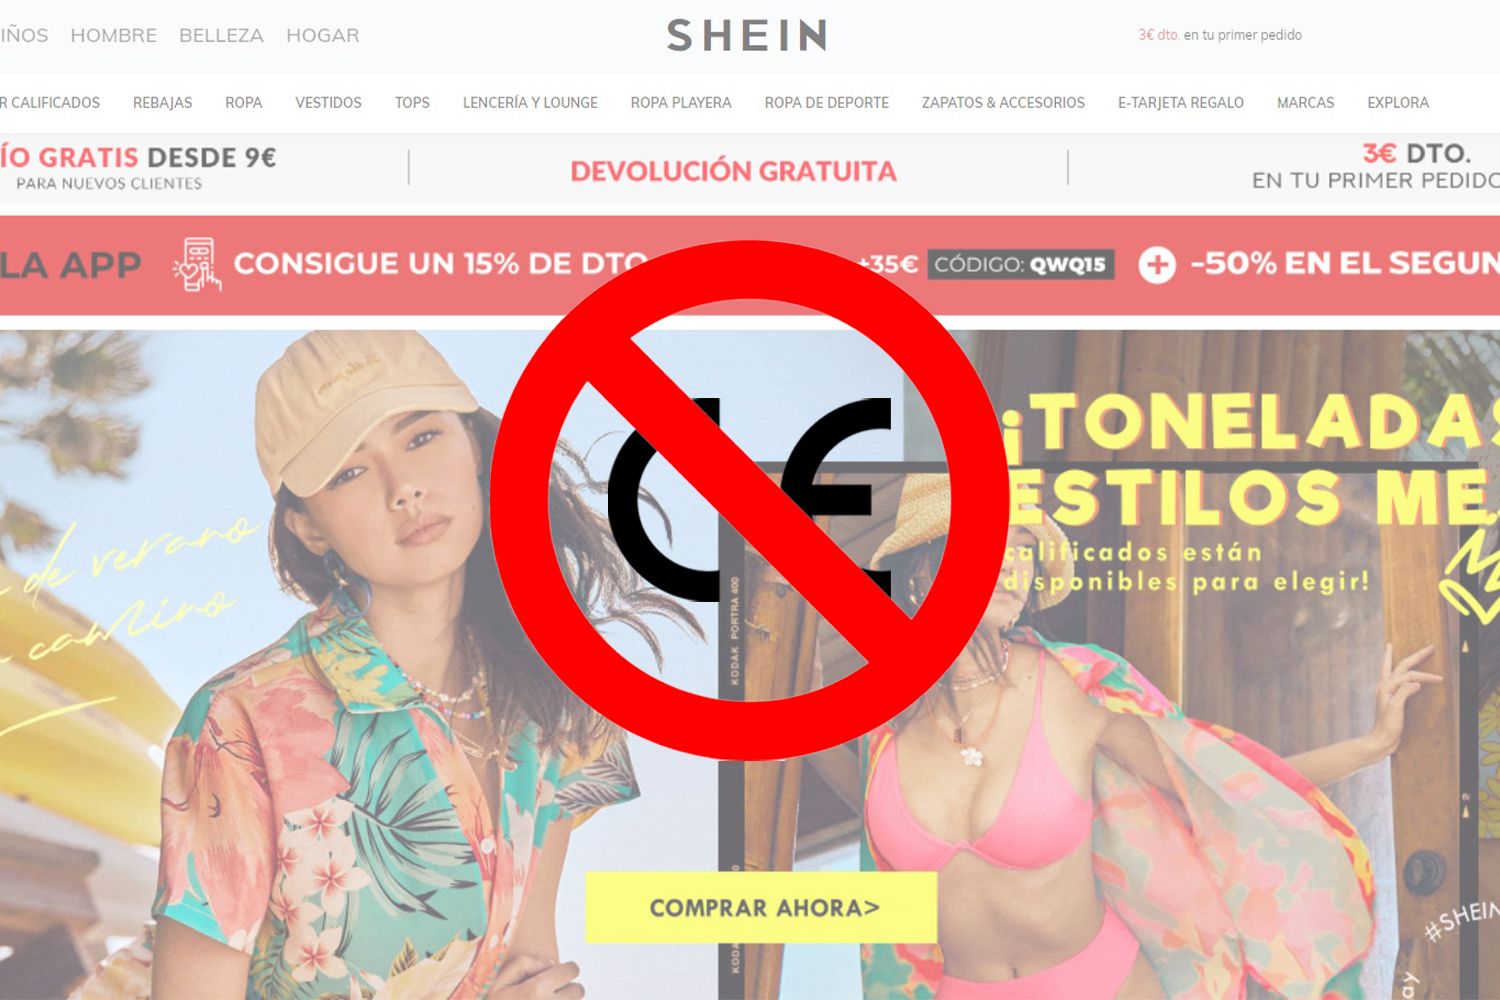 Está a Shein em perigo na Europa pela sua moda pouco sustentável?